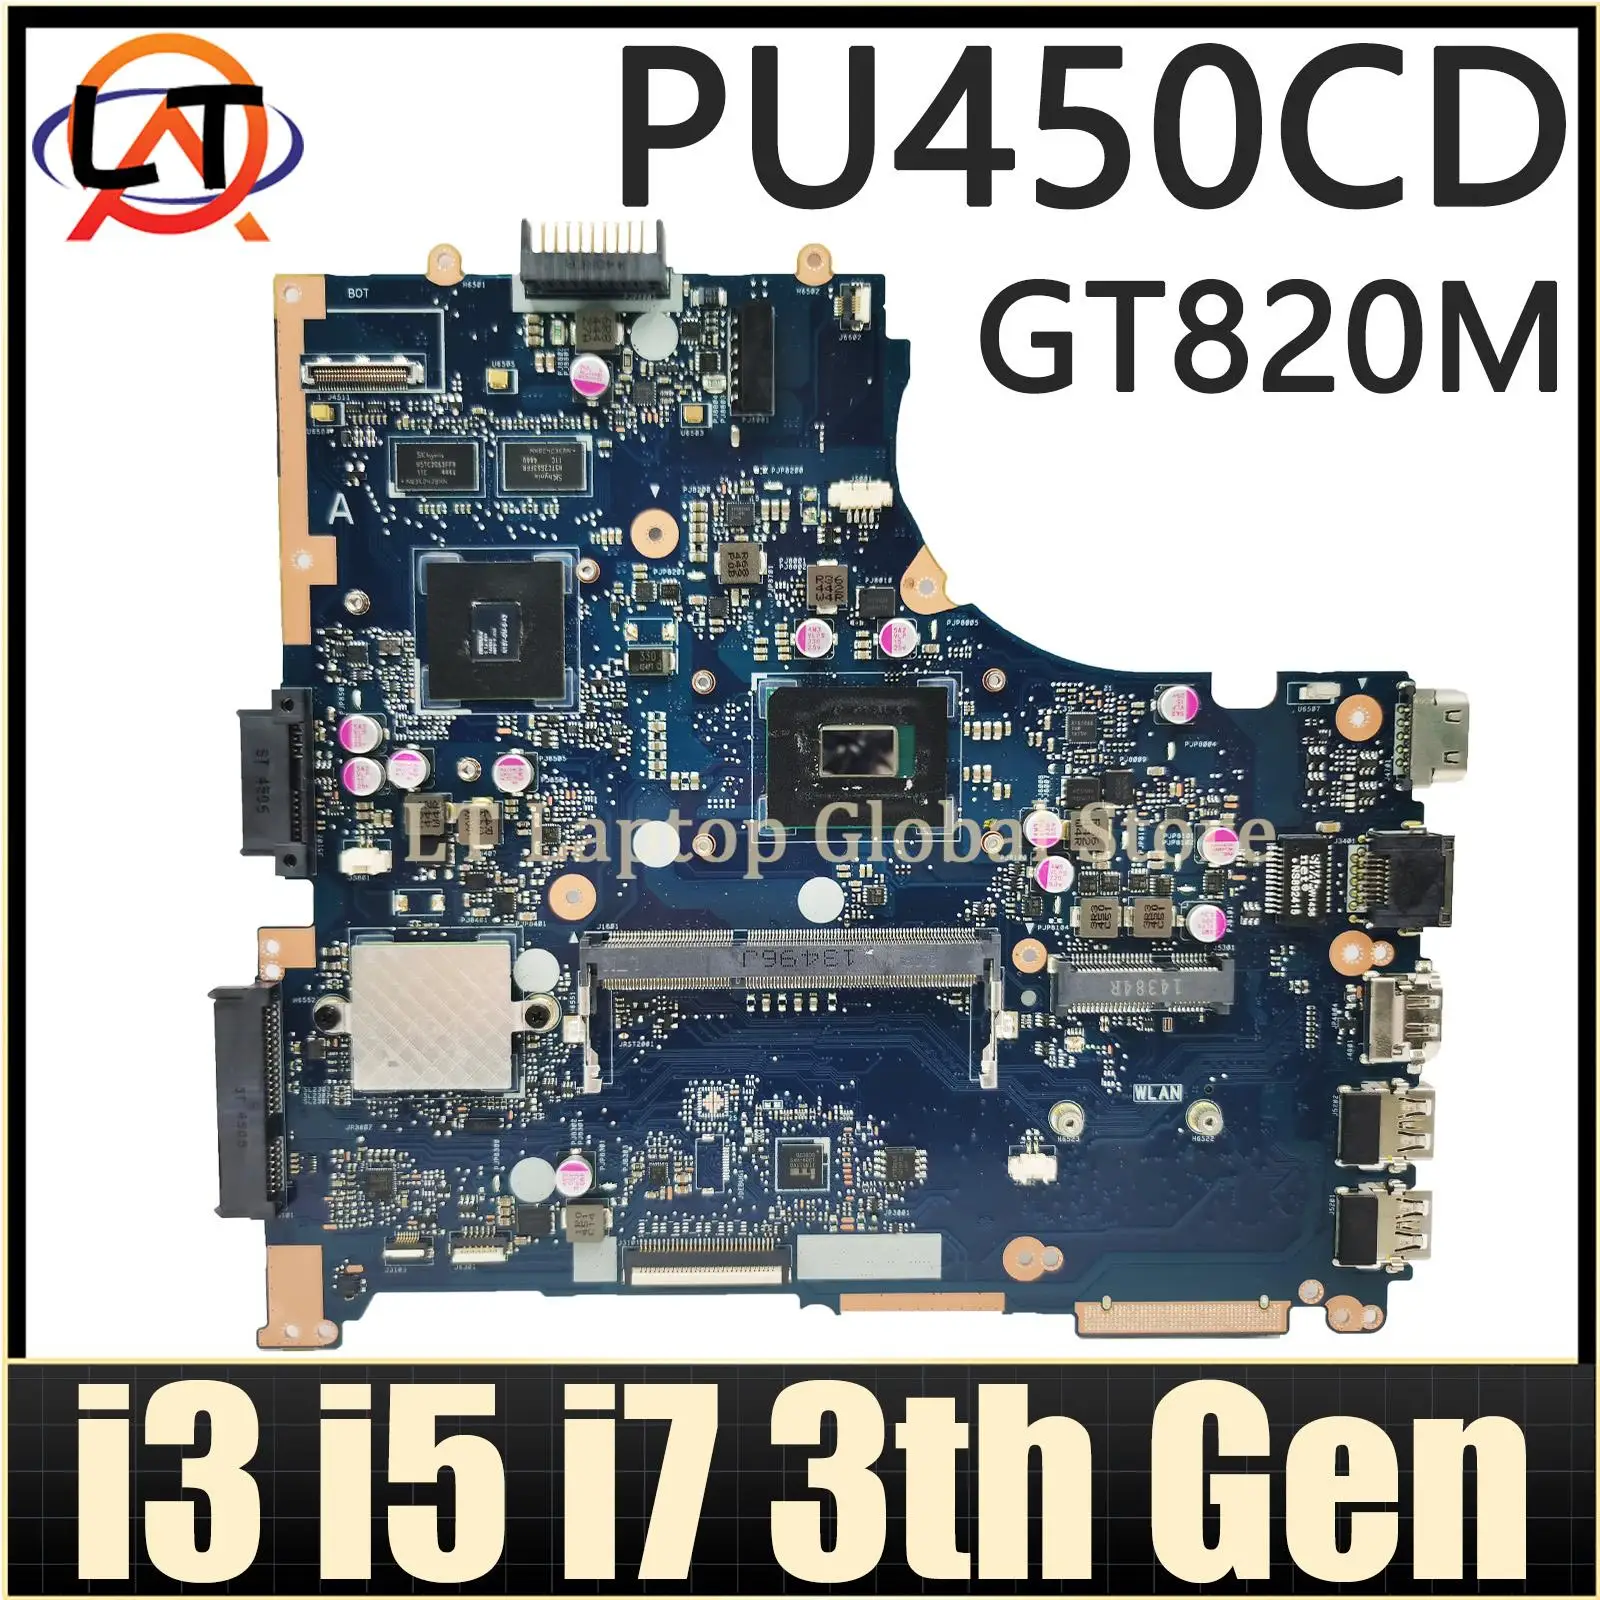 

PU450CD Mainboard For ASUS PU450CD PU450C PU450 Laptop Motherboard 1007U/2117U i3 i5 i7 3th Gen CPU GT820M